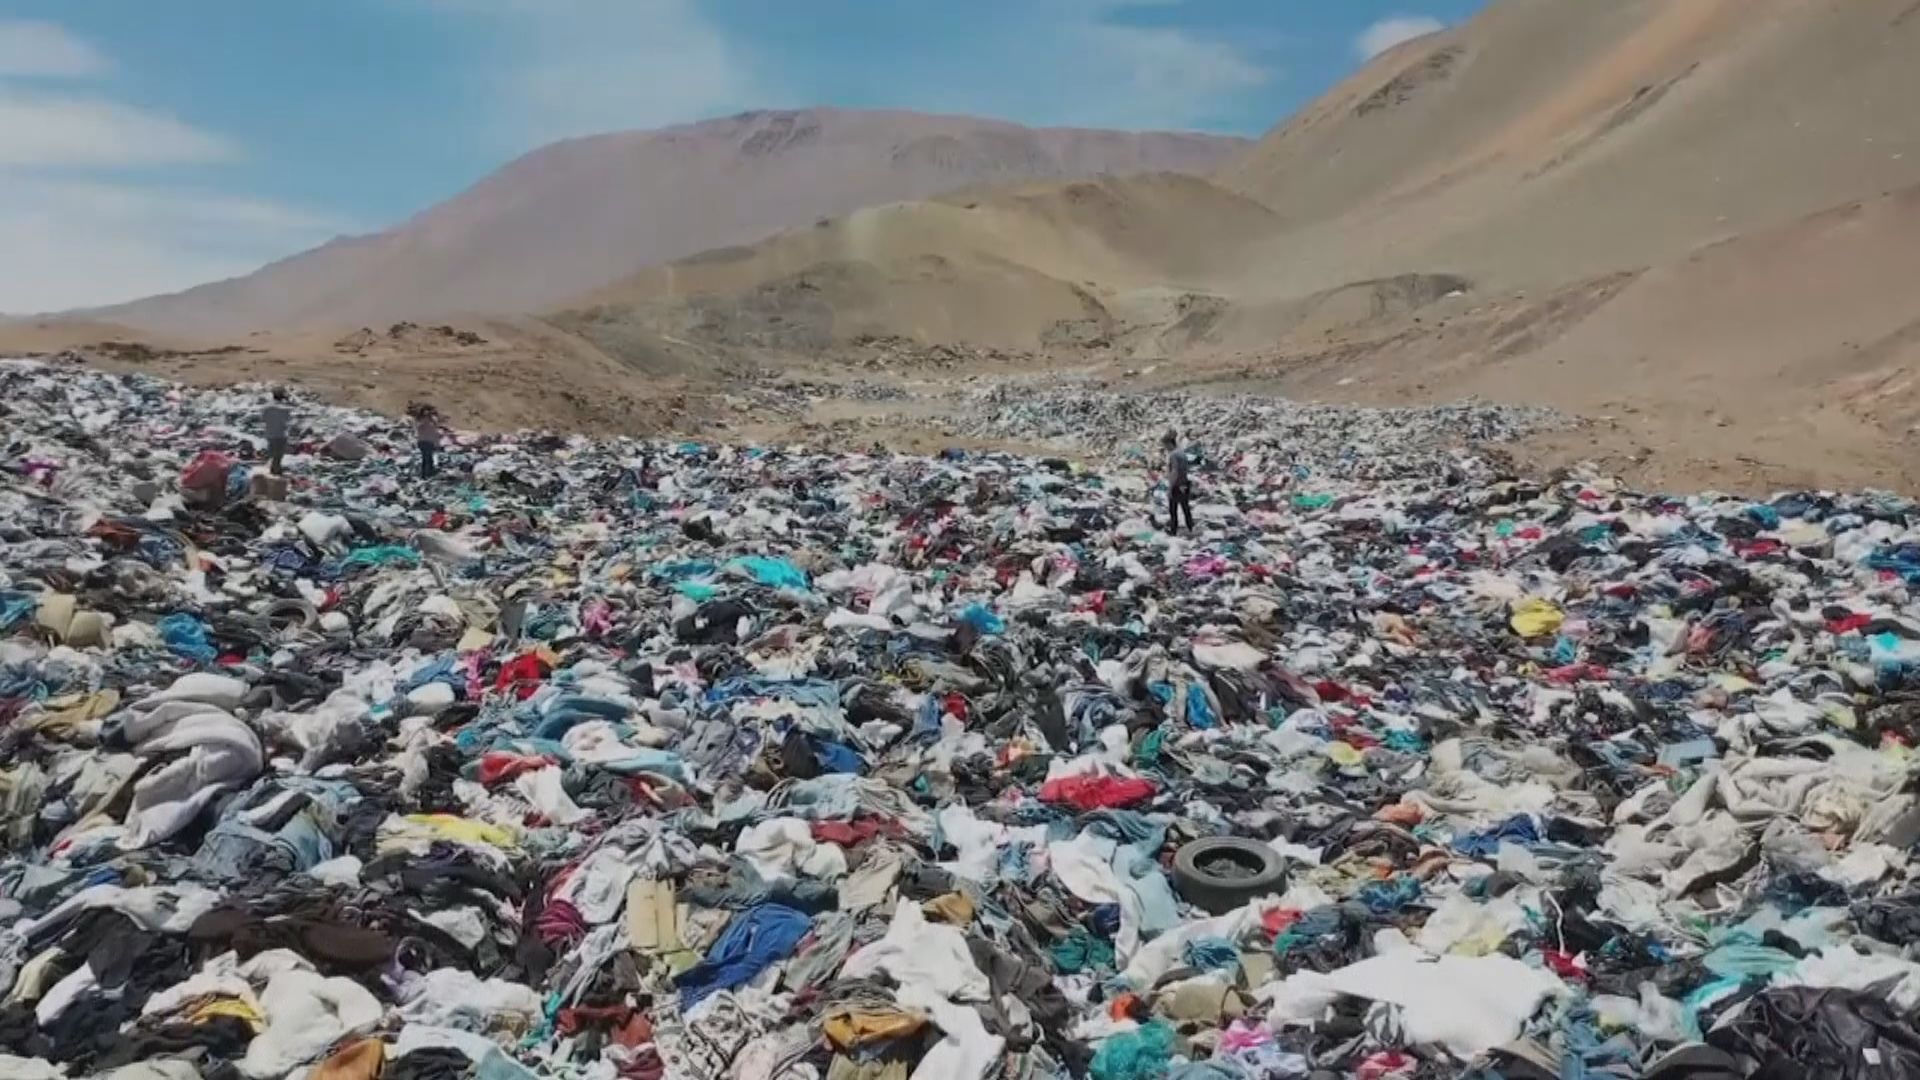 舊衣物被棄置智利沙漠污染環境